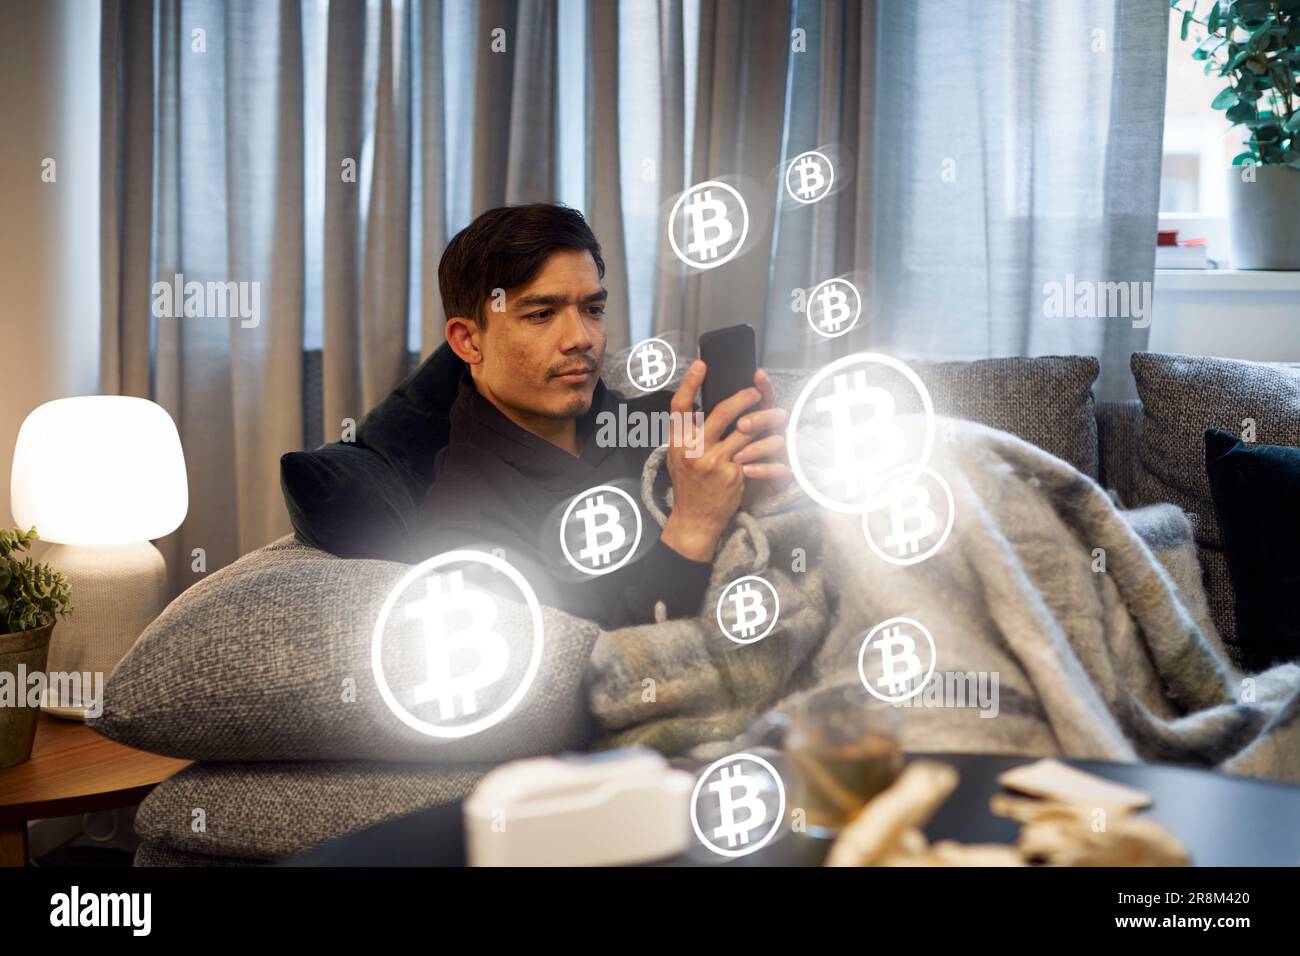 Homme vérifiant les taux de la crypto-monnaie bitcoin sur le téléphone Banque D'Images